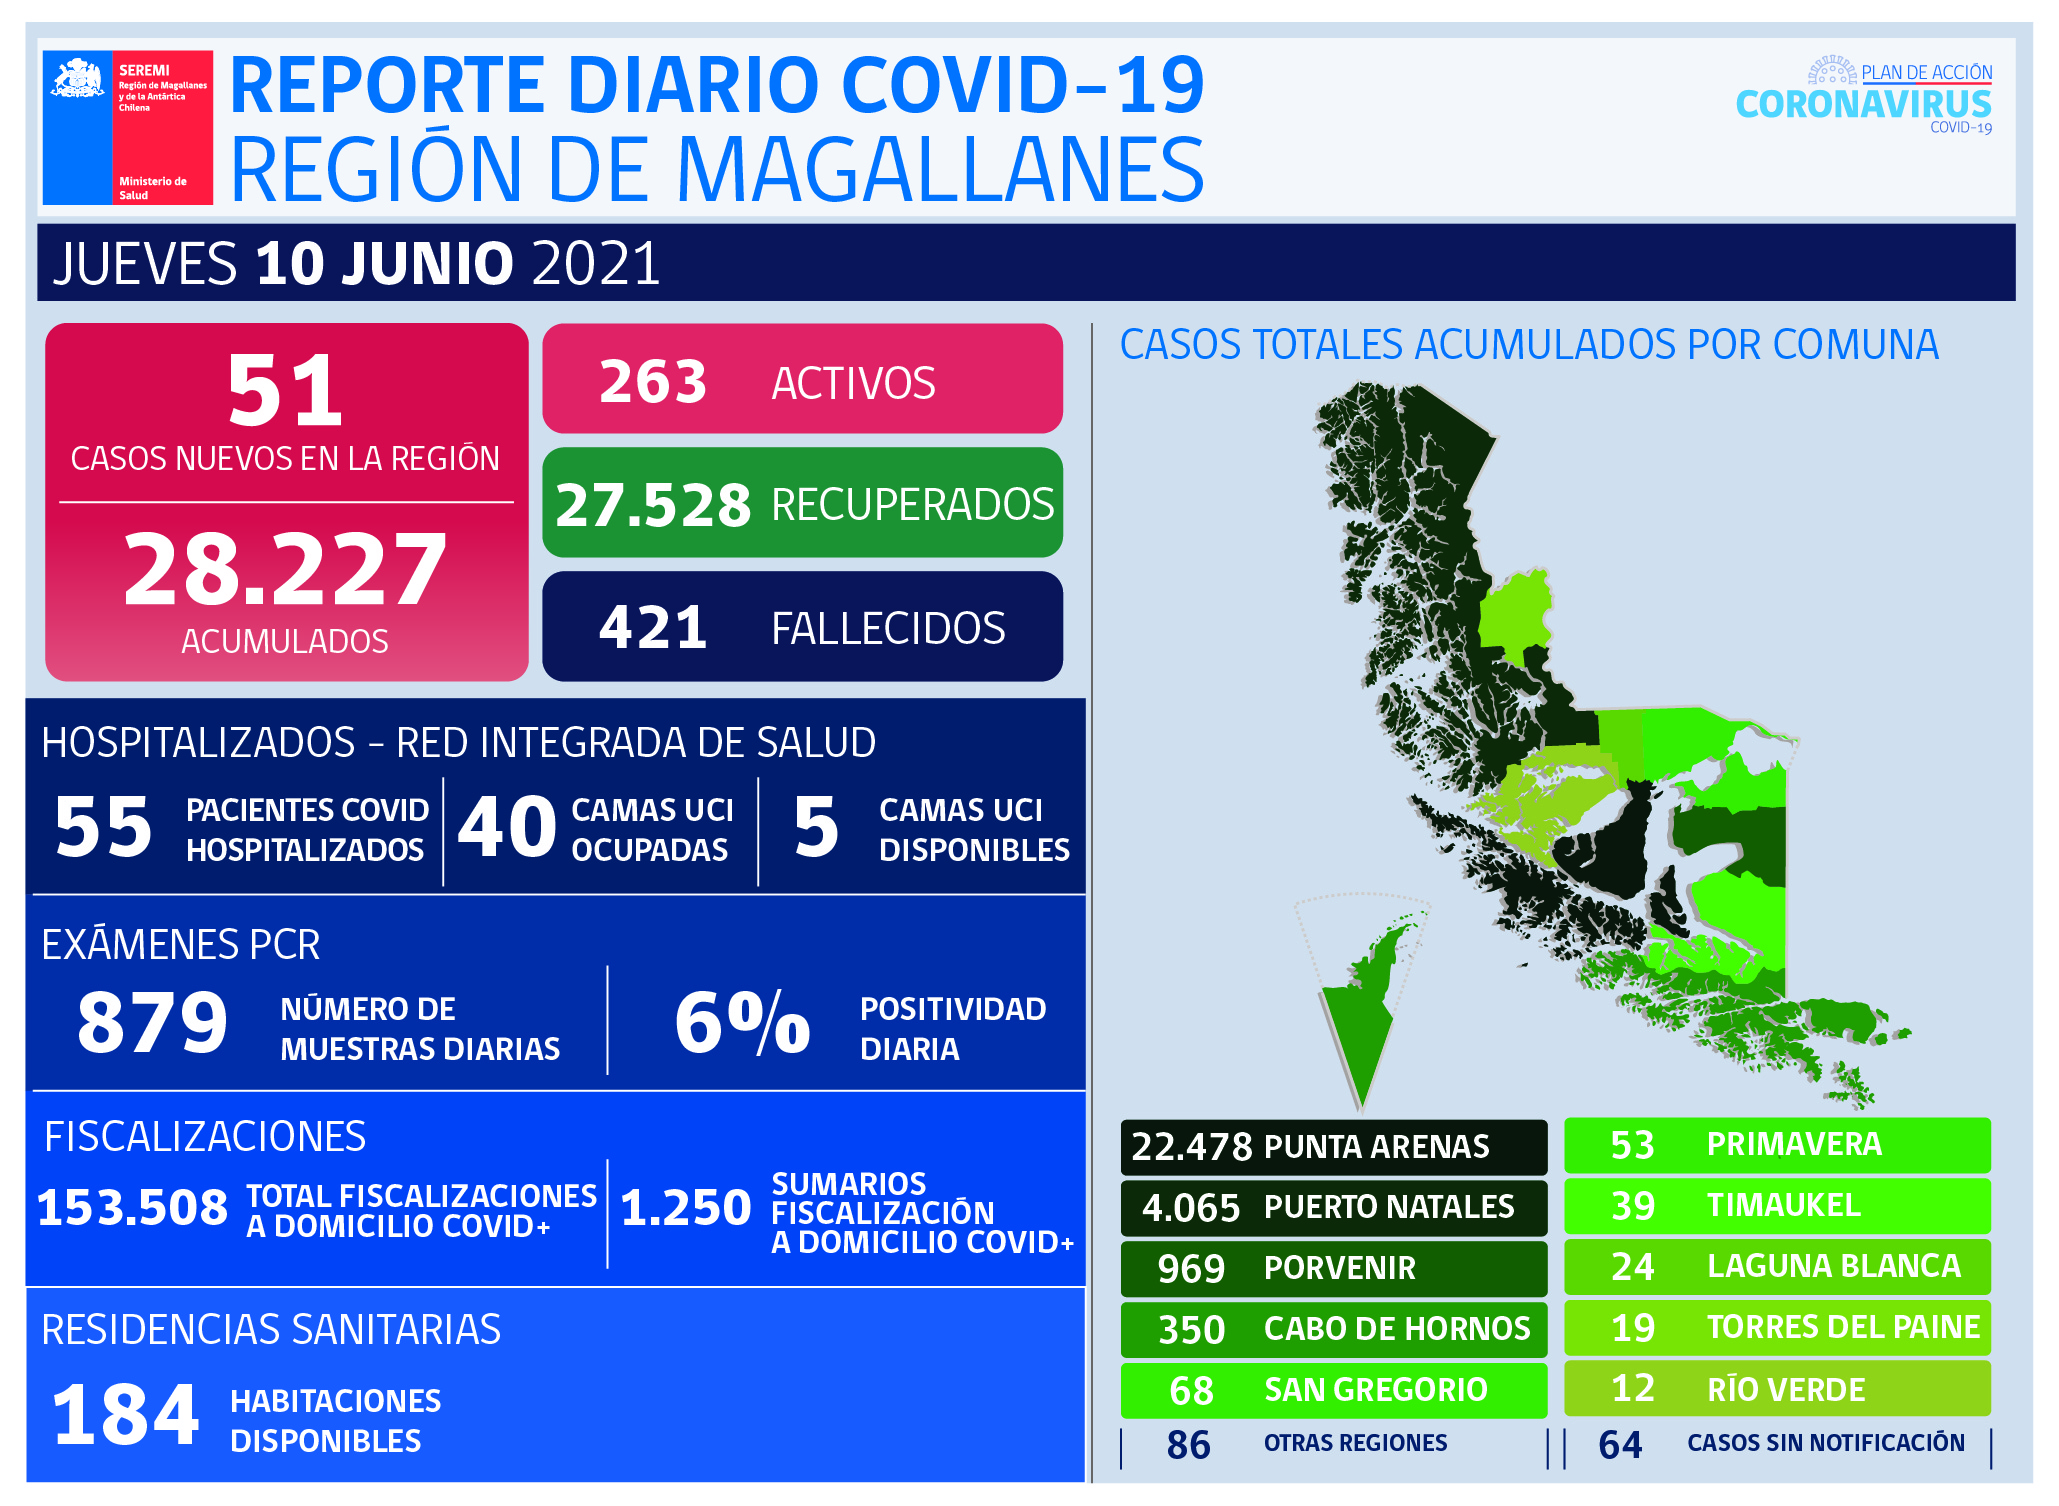 51 nuevos casos covid19 en Magallanes en las últimas 24 horas, informó la autoridad de Salud